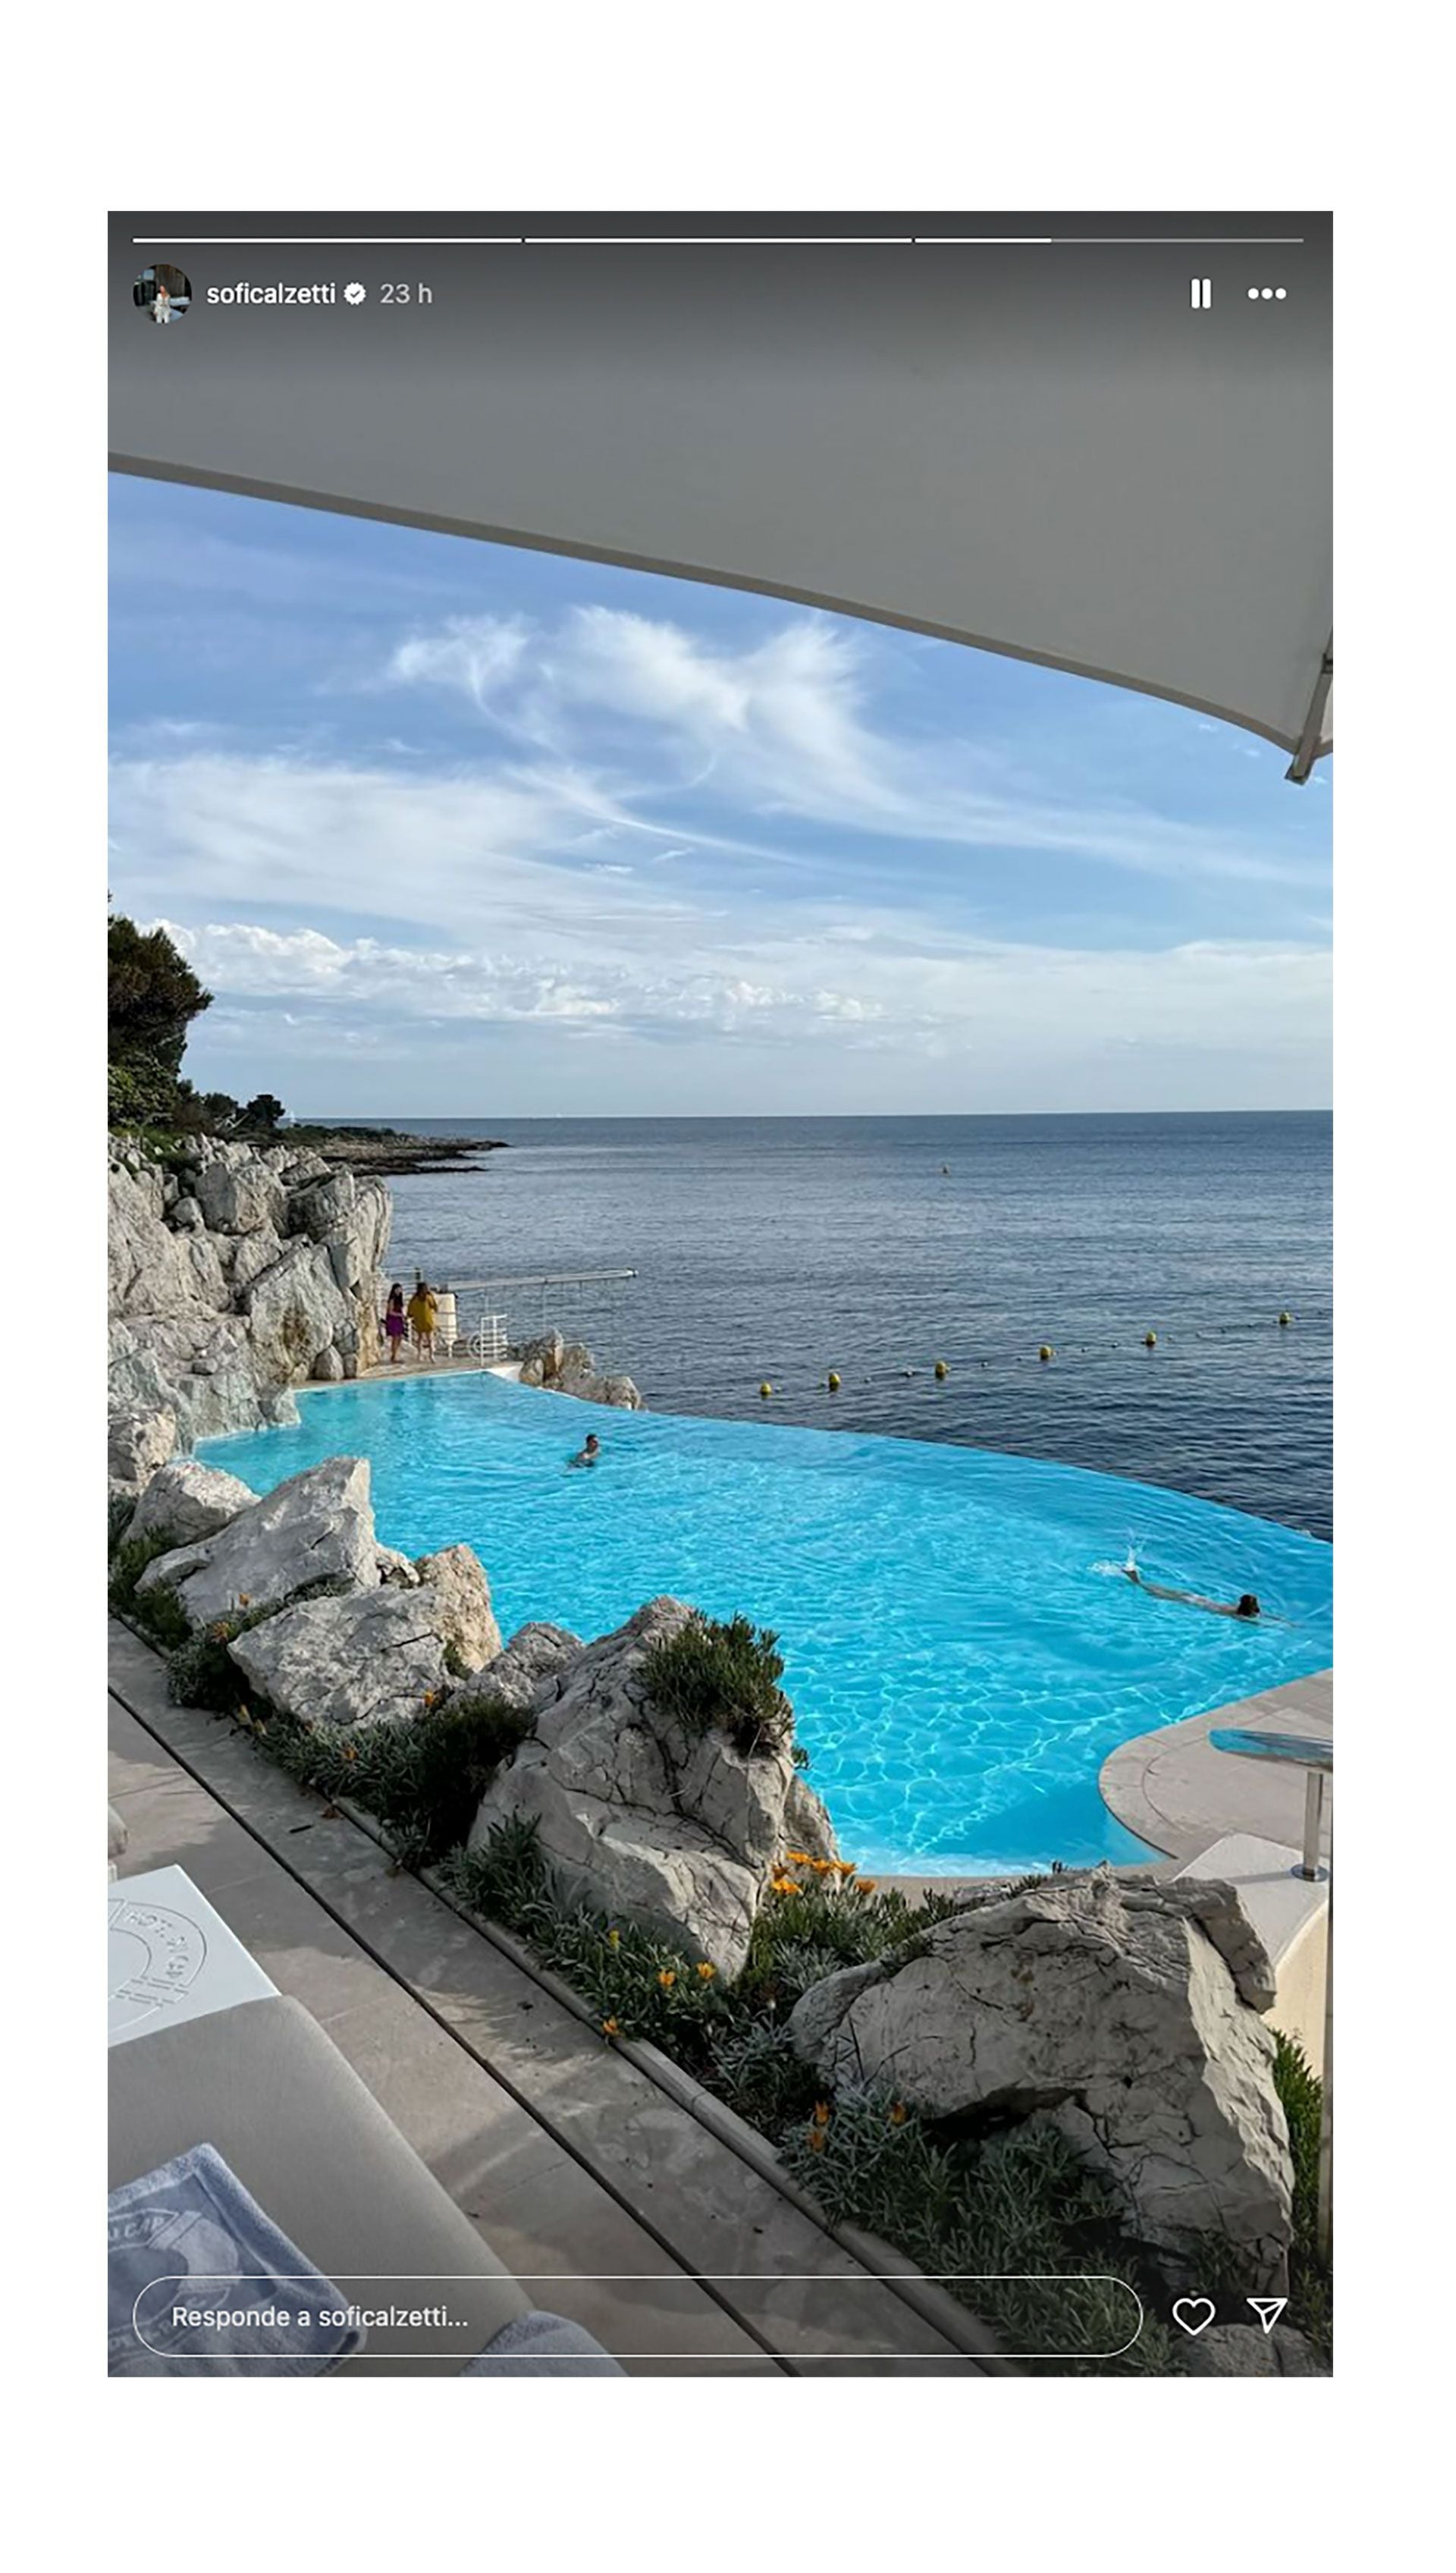 El lujoso hotel de la Costa Azul francesa donde se hospedó el Kun Agüero